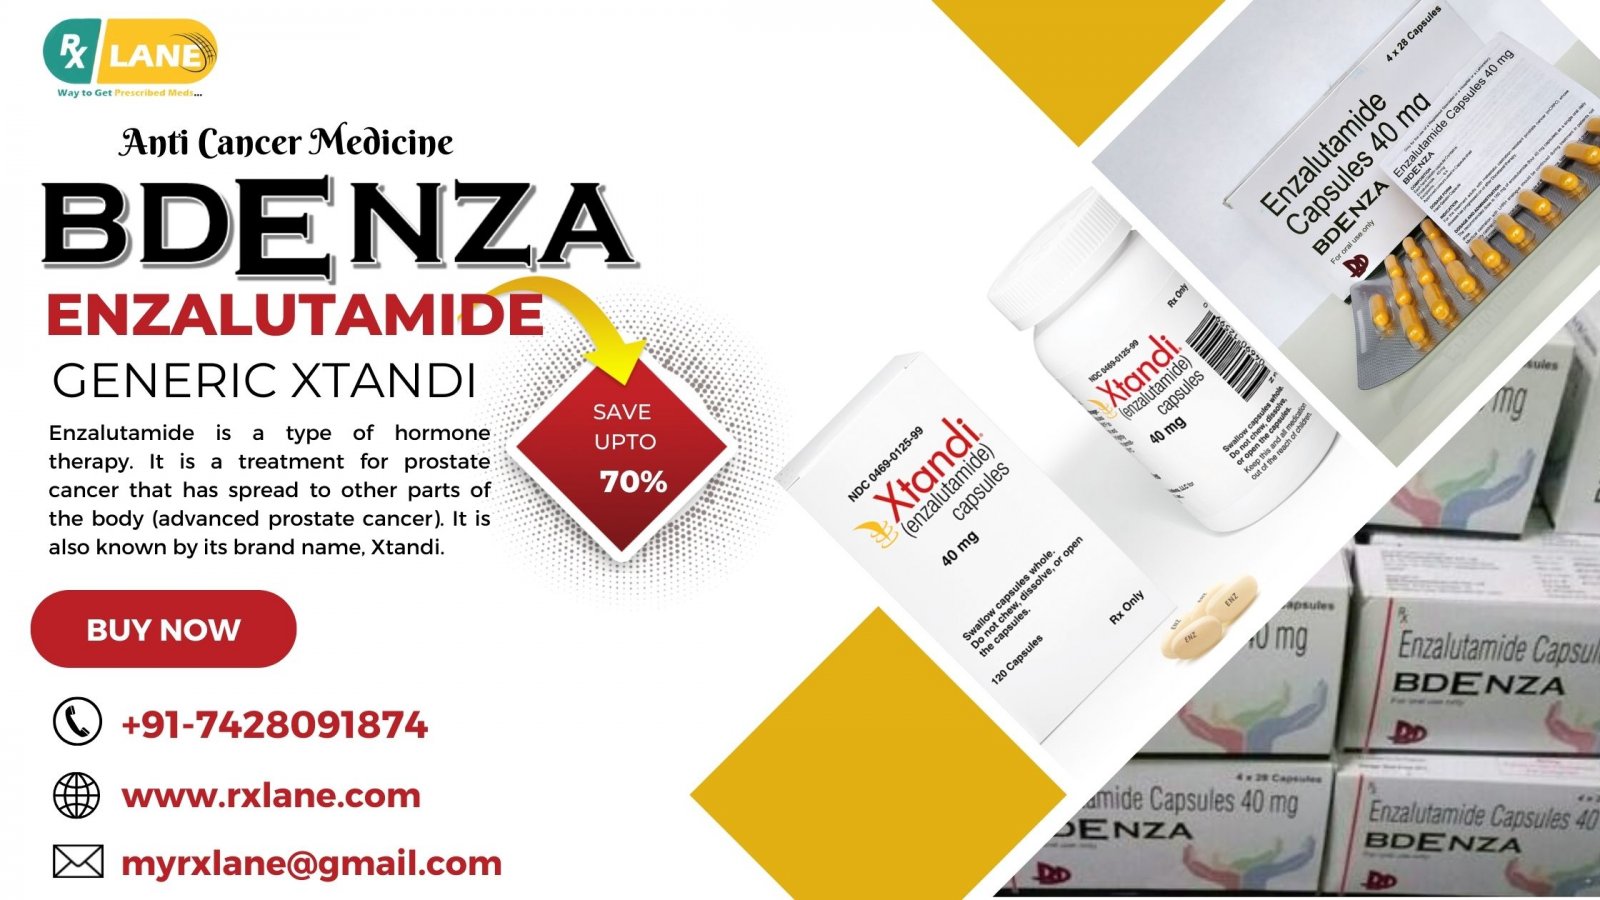 Bdenza Enzalutamide Capsules Wholesale Price Generic Xtandi Philippines Thailand